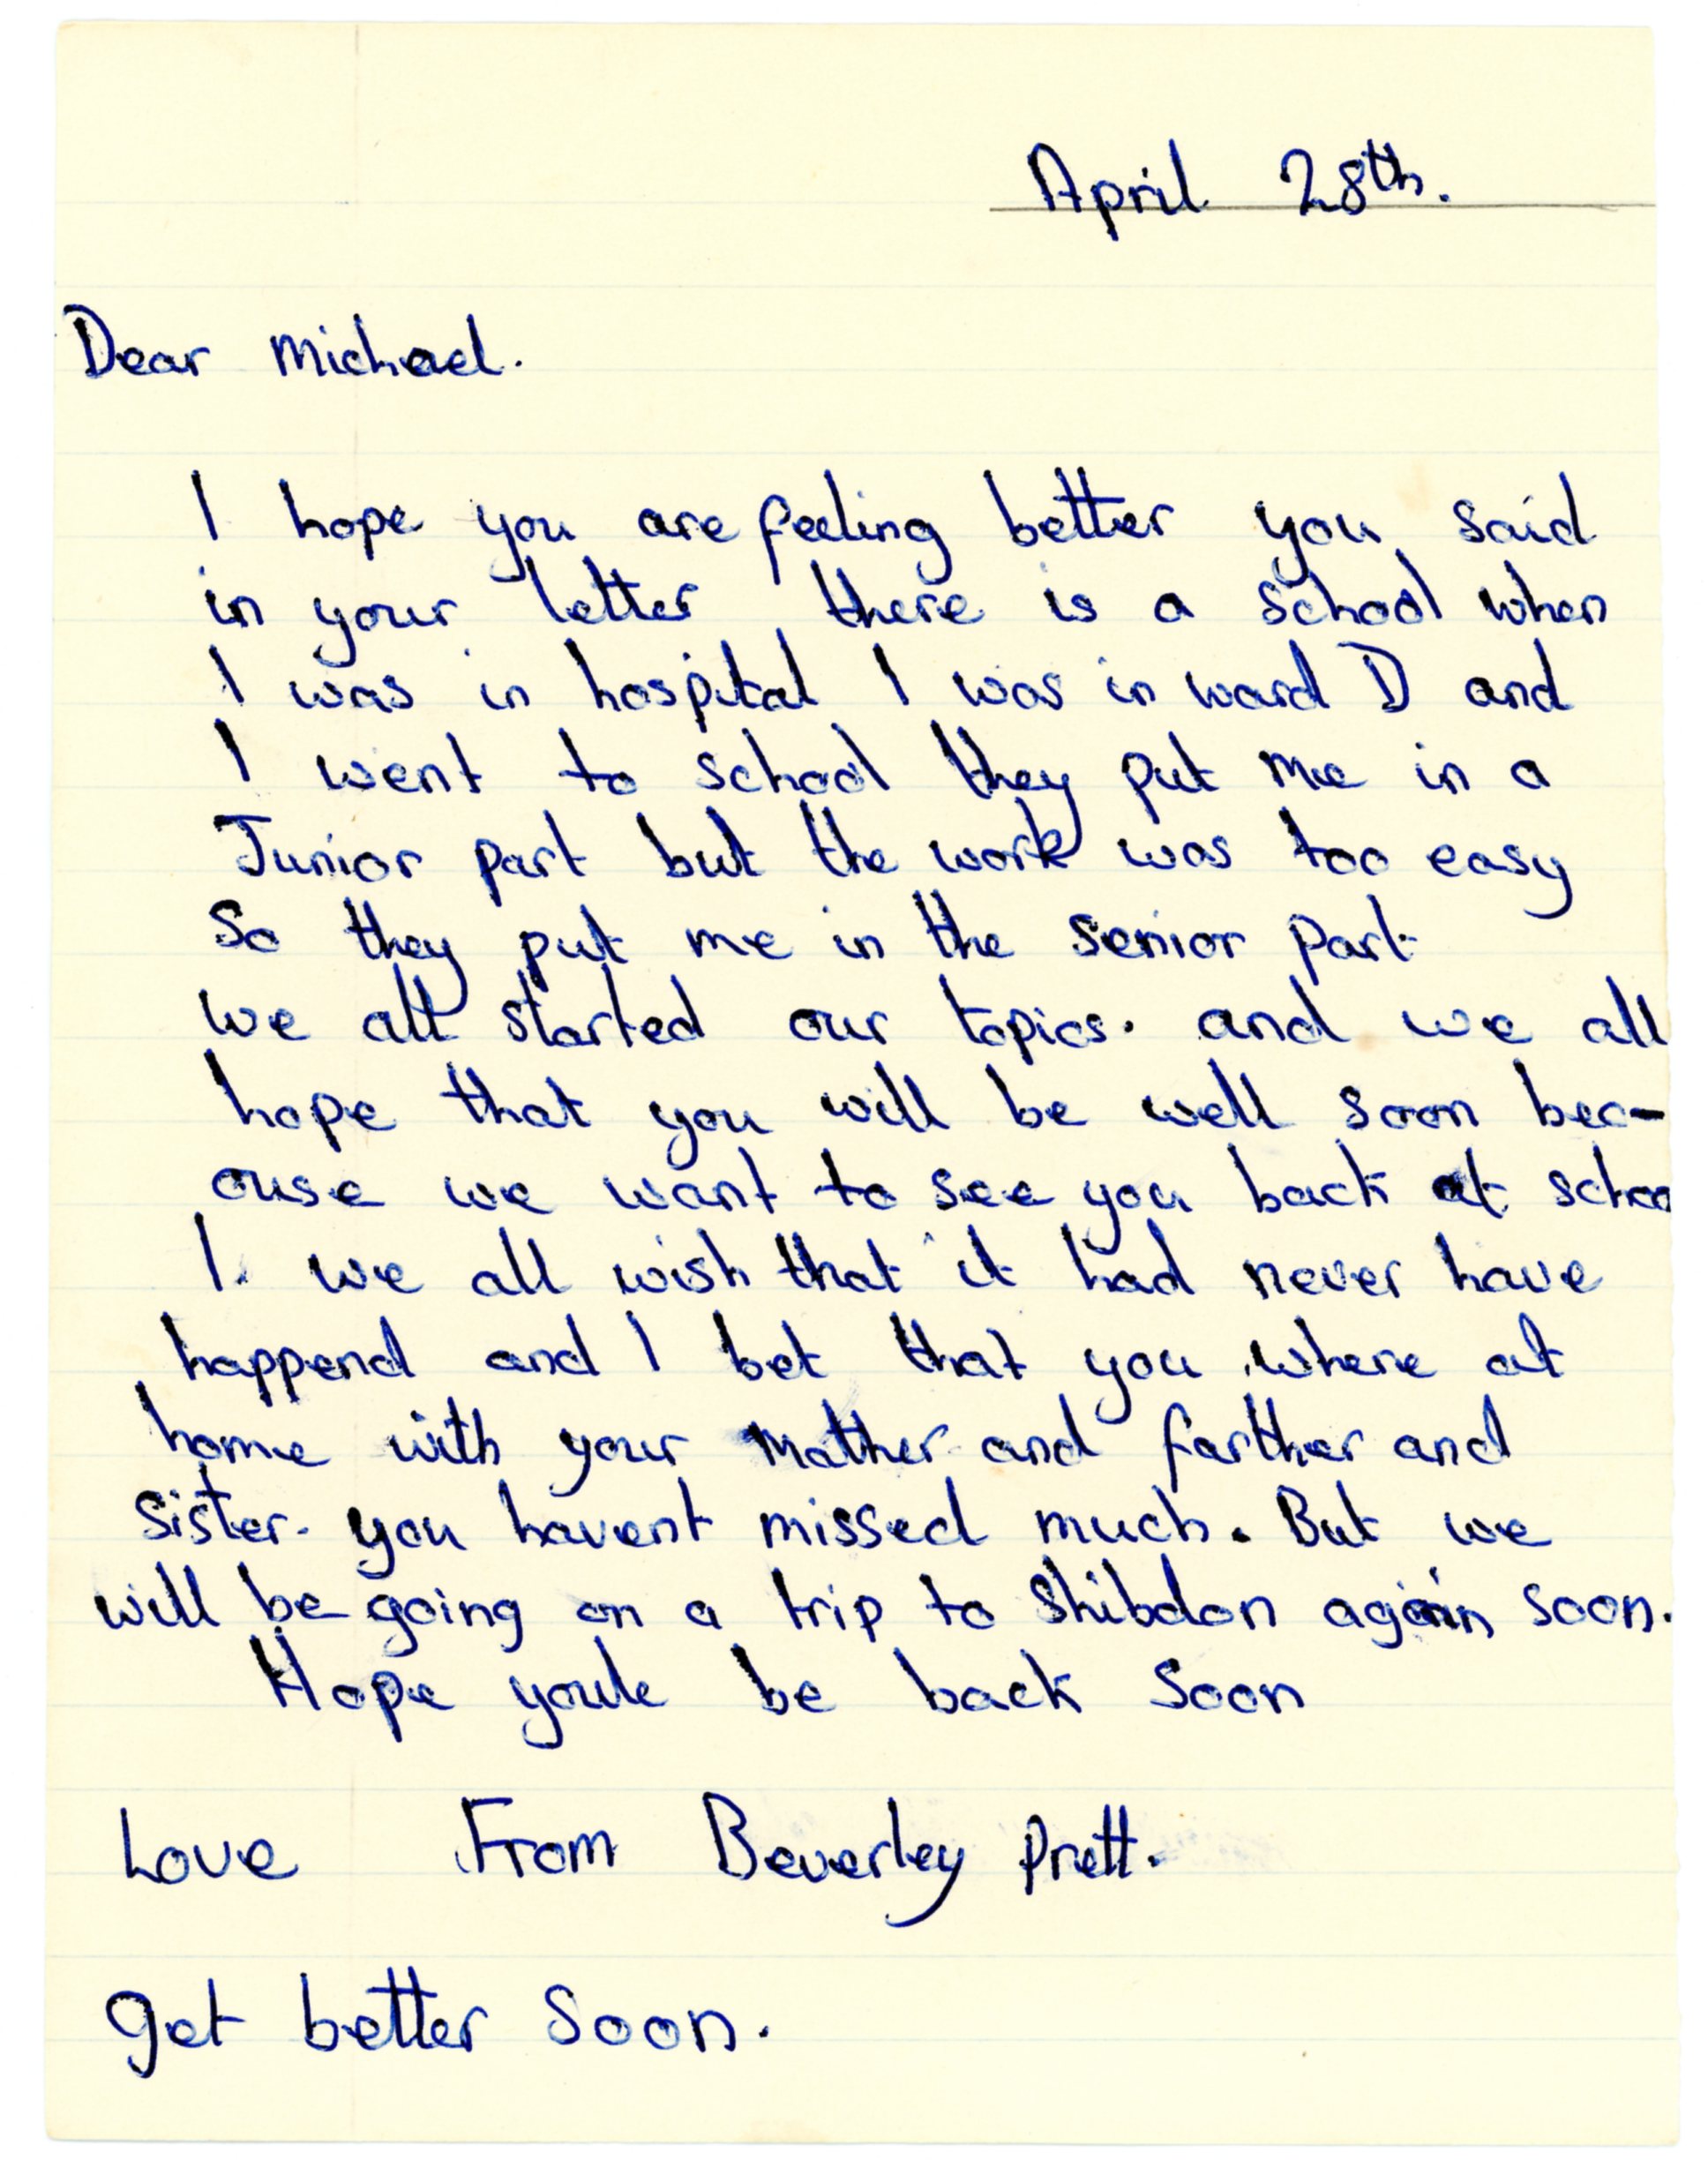 Beverley Prett's original letter